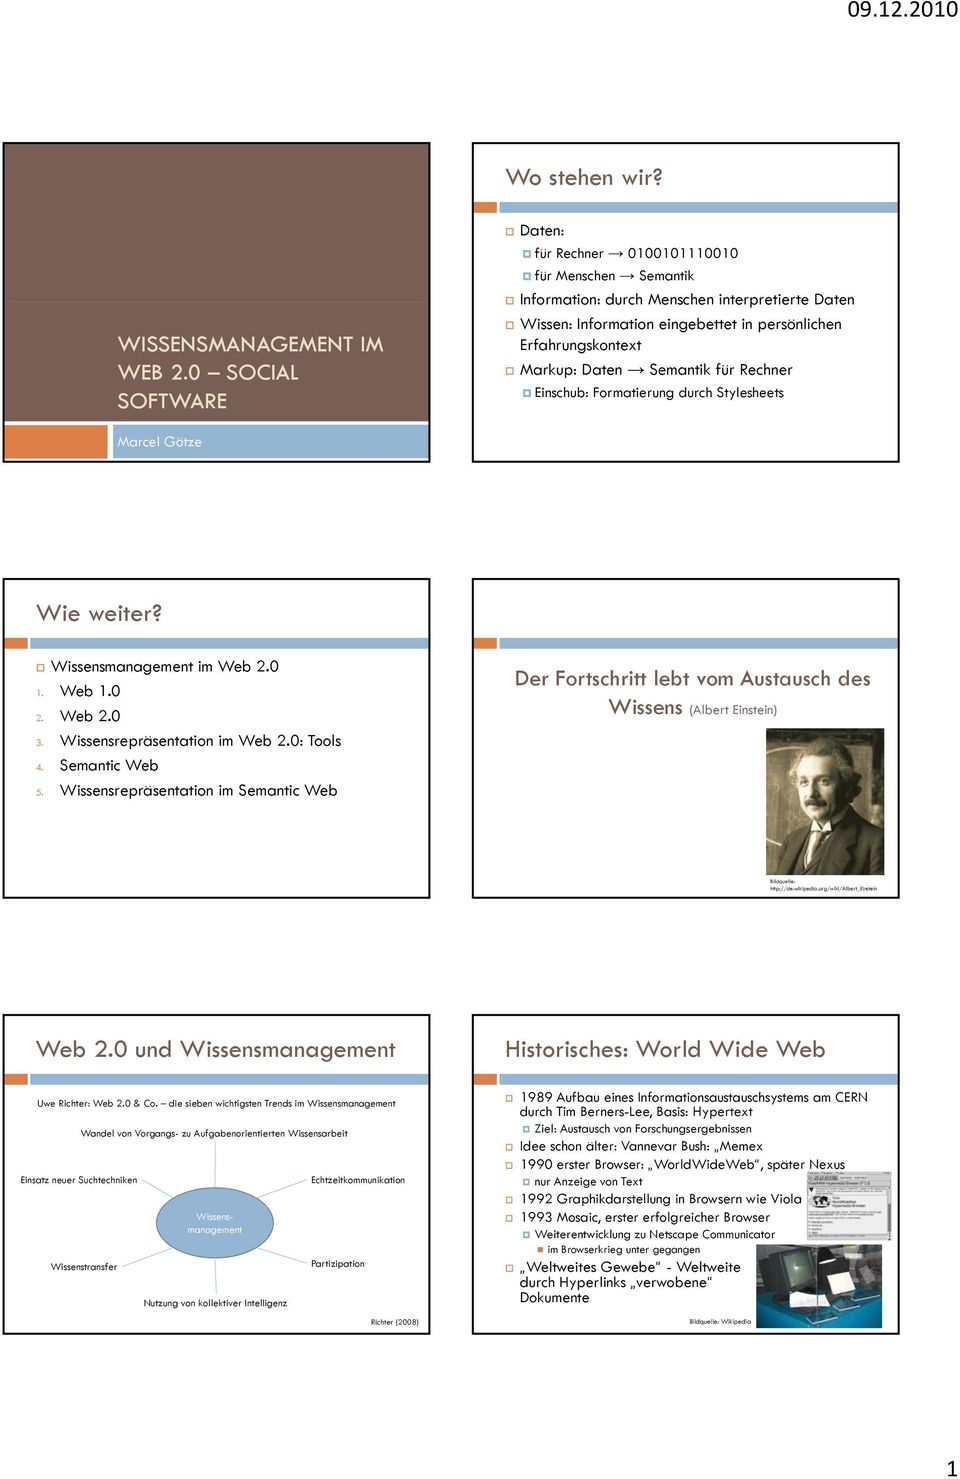 Daten Semantik für Rechner Einschub: Formatierung durch Stylesheets Marcel Götze Wie weiter? Wissensmanagement im Web 2.0 1. Web 1.0 2. Web 2.0 3. Wissensrepräsentation ti im Web 20 2.0: Tools 4.